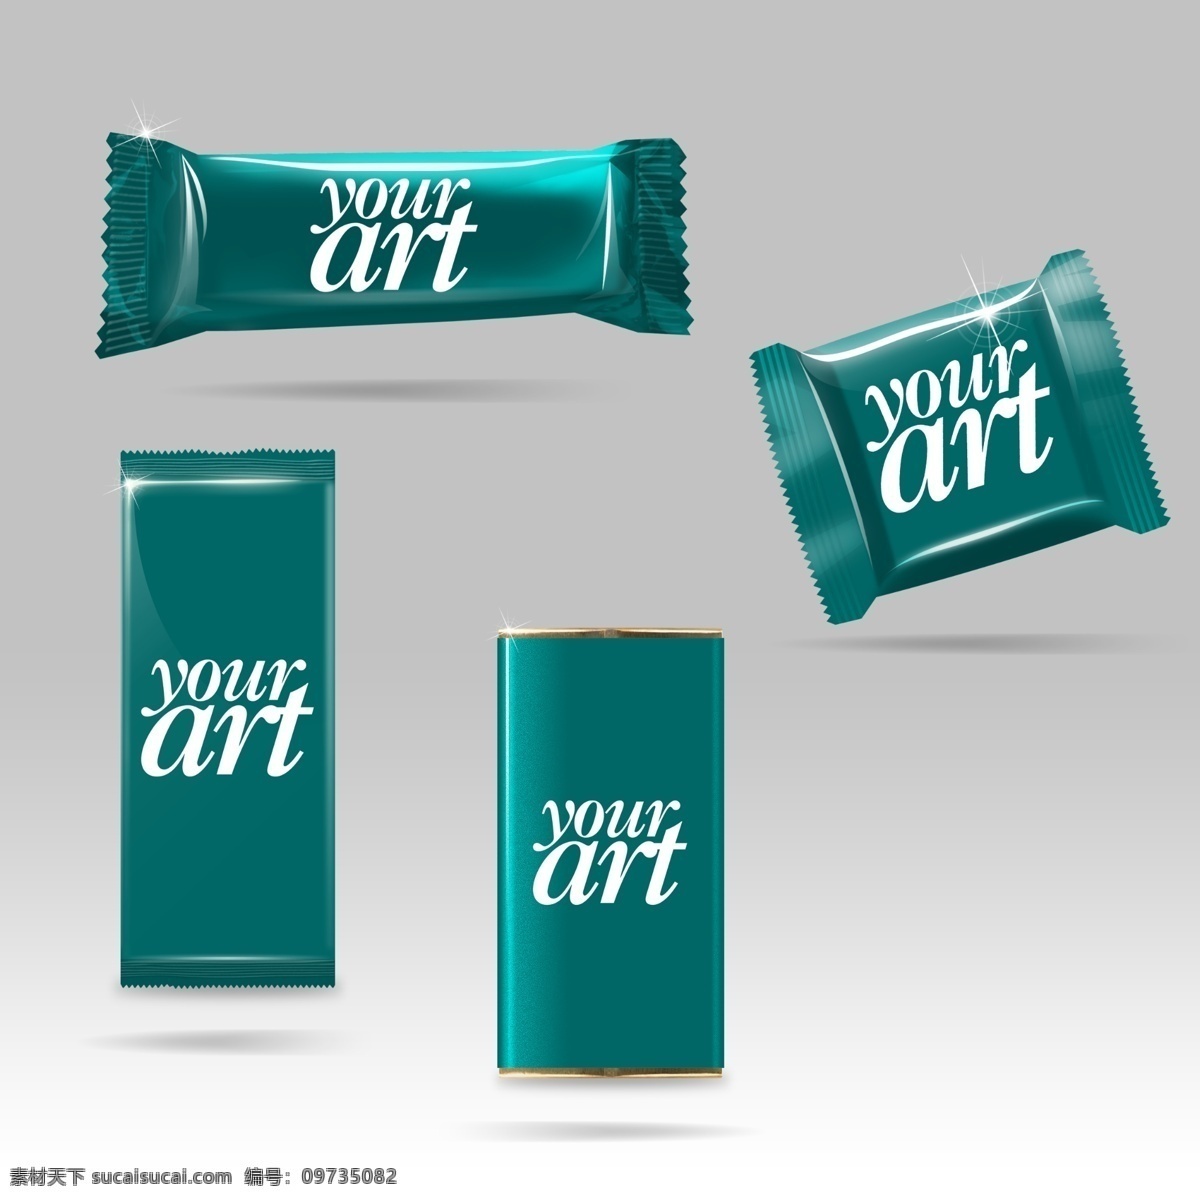 高端 巧克力 包装 原创 your 包装袋效果图 光效 巧克力包装 art 国外 原创设计 原创包装设计